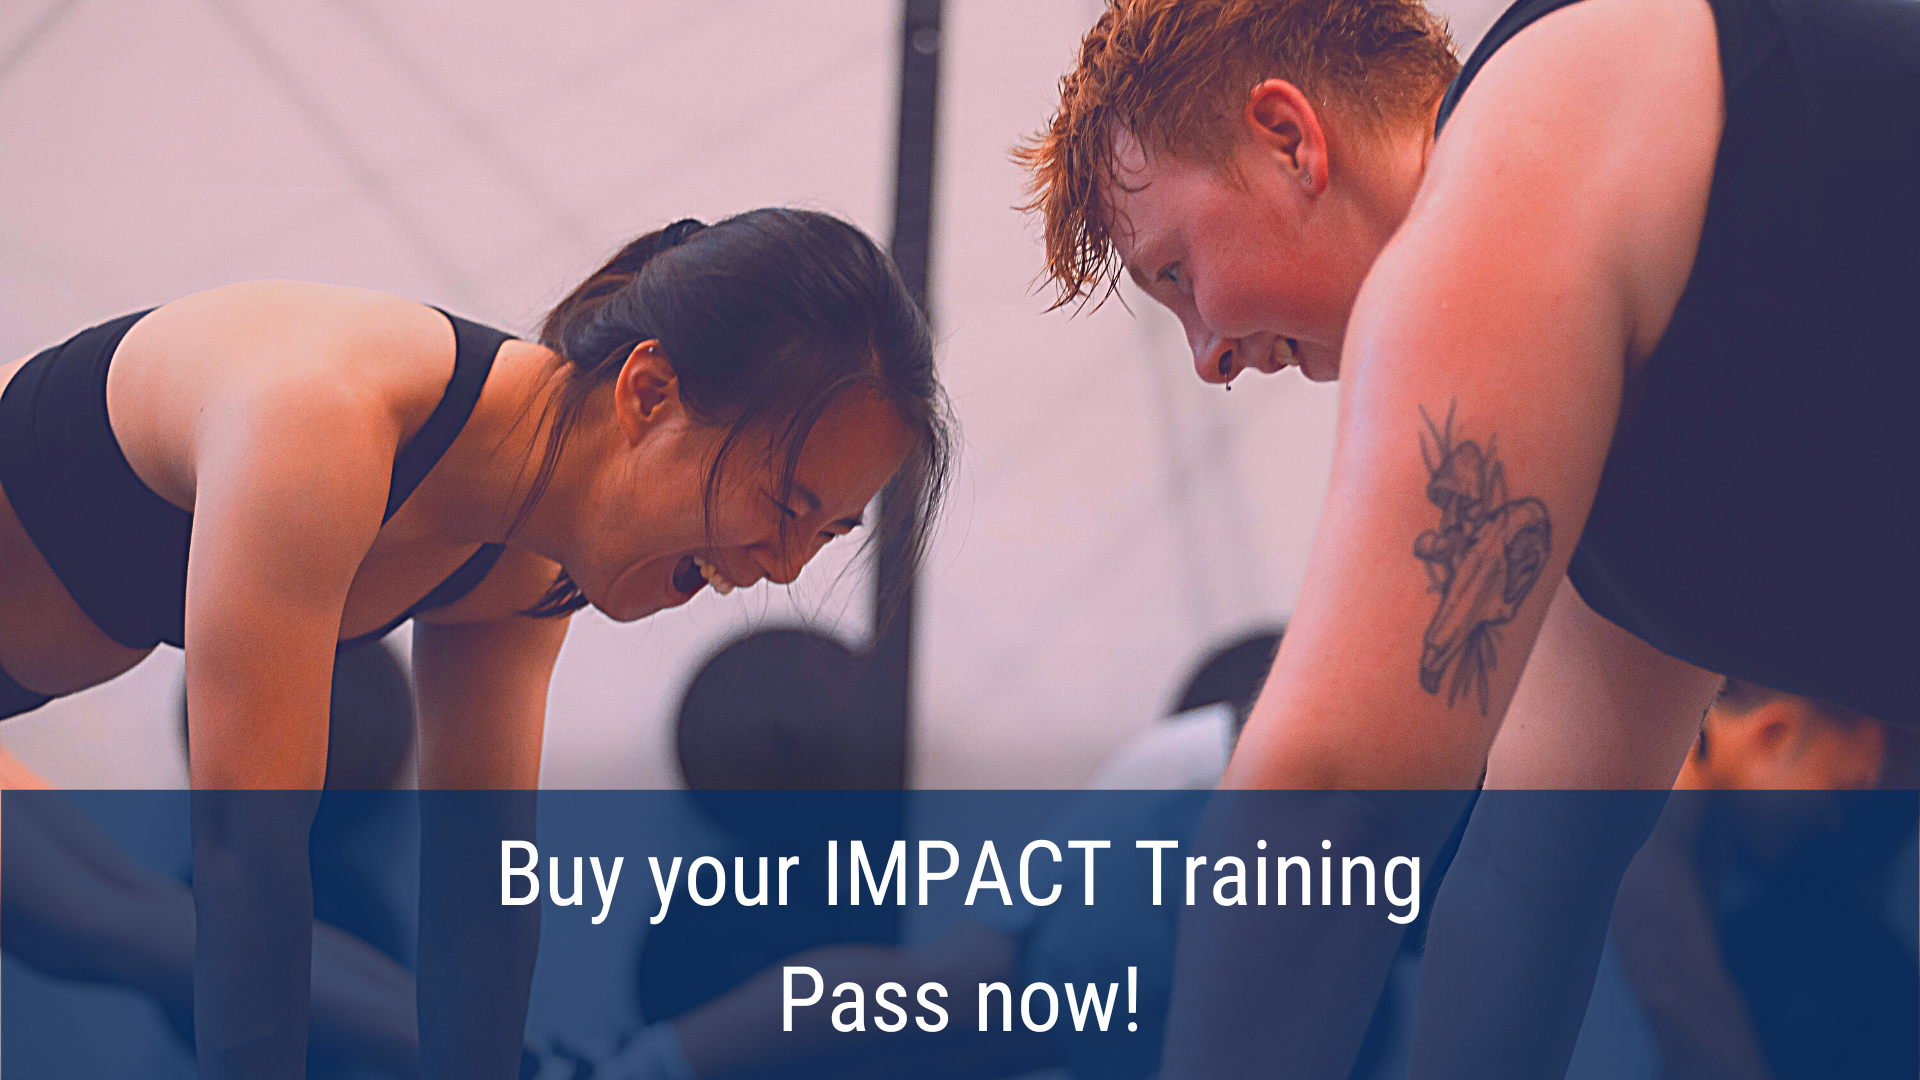 graphic advertising IMPACT Training Pass